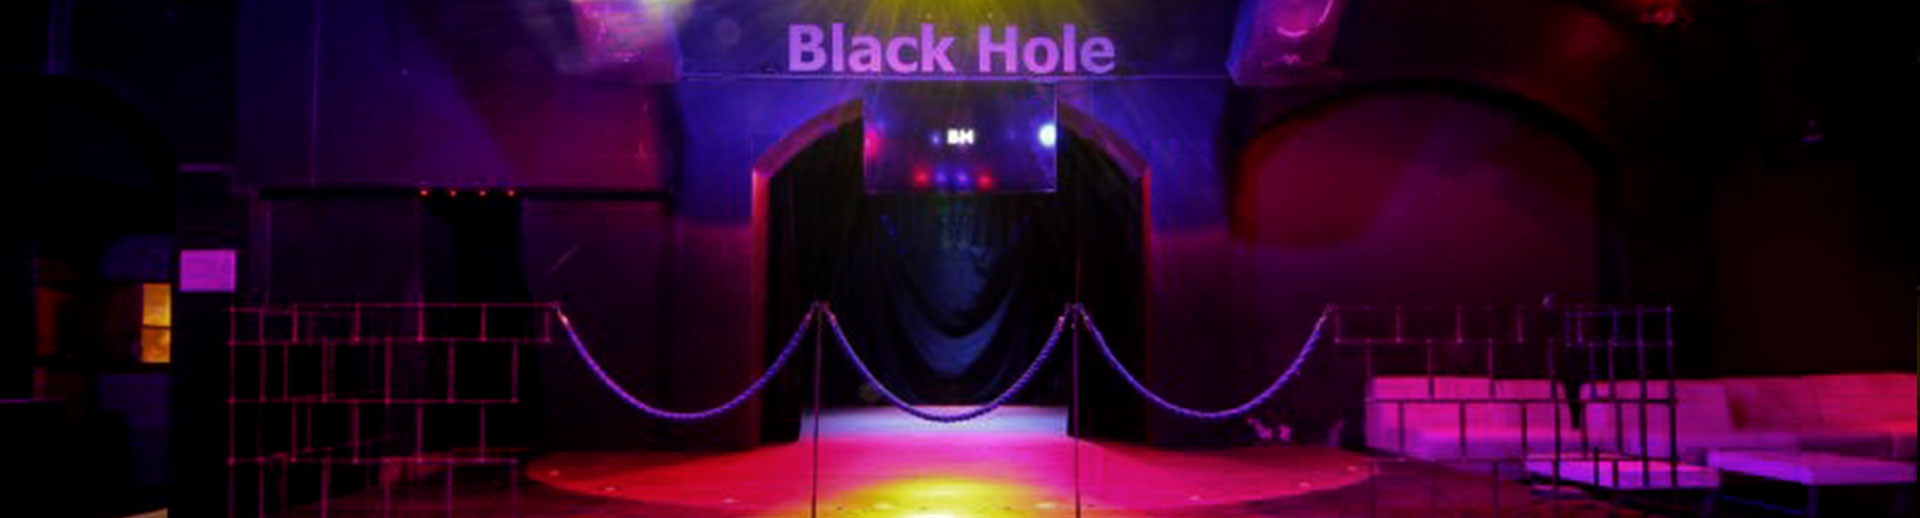 Black Hole Milano | Discoteche e night club a Milano per feste e musica dal vivo | immagine Sala Login